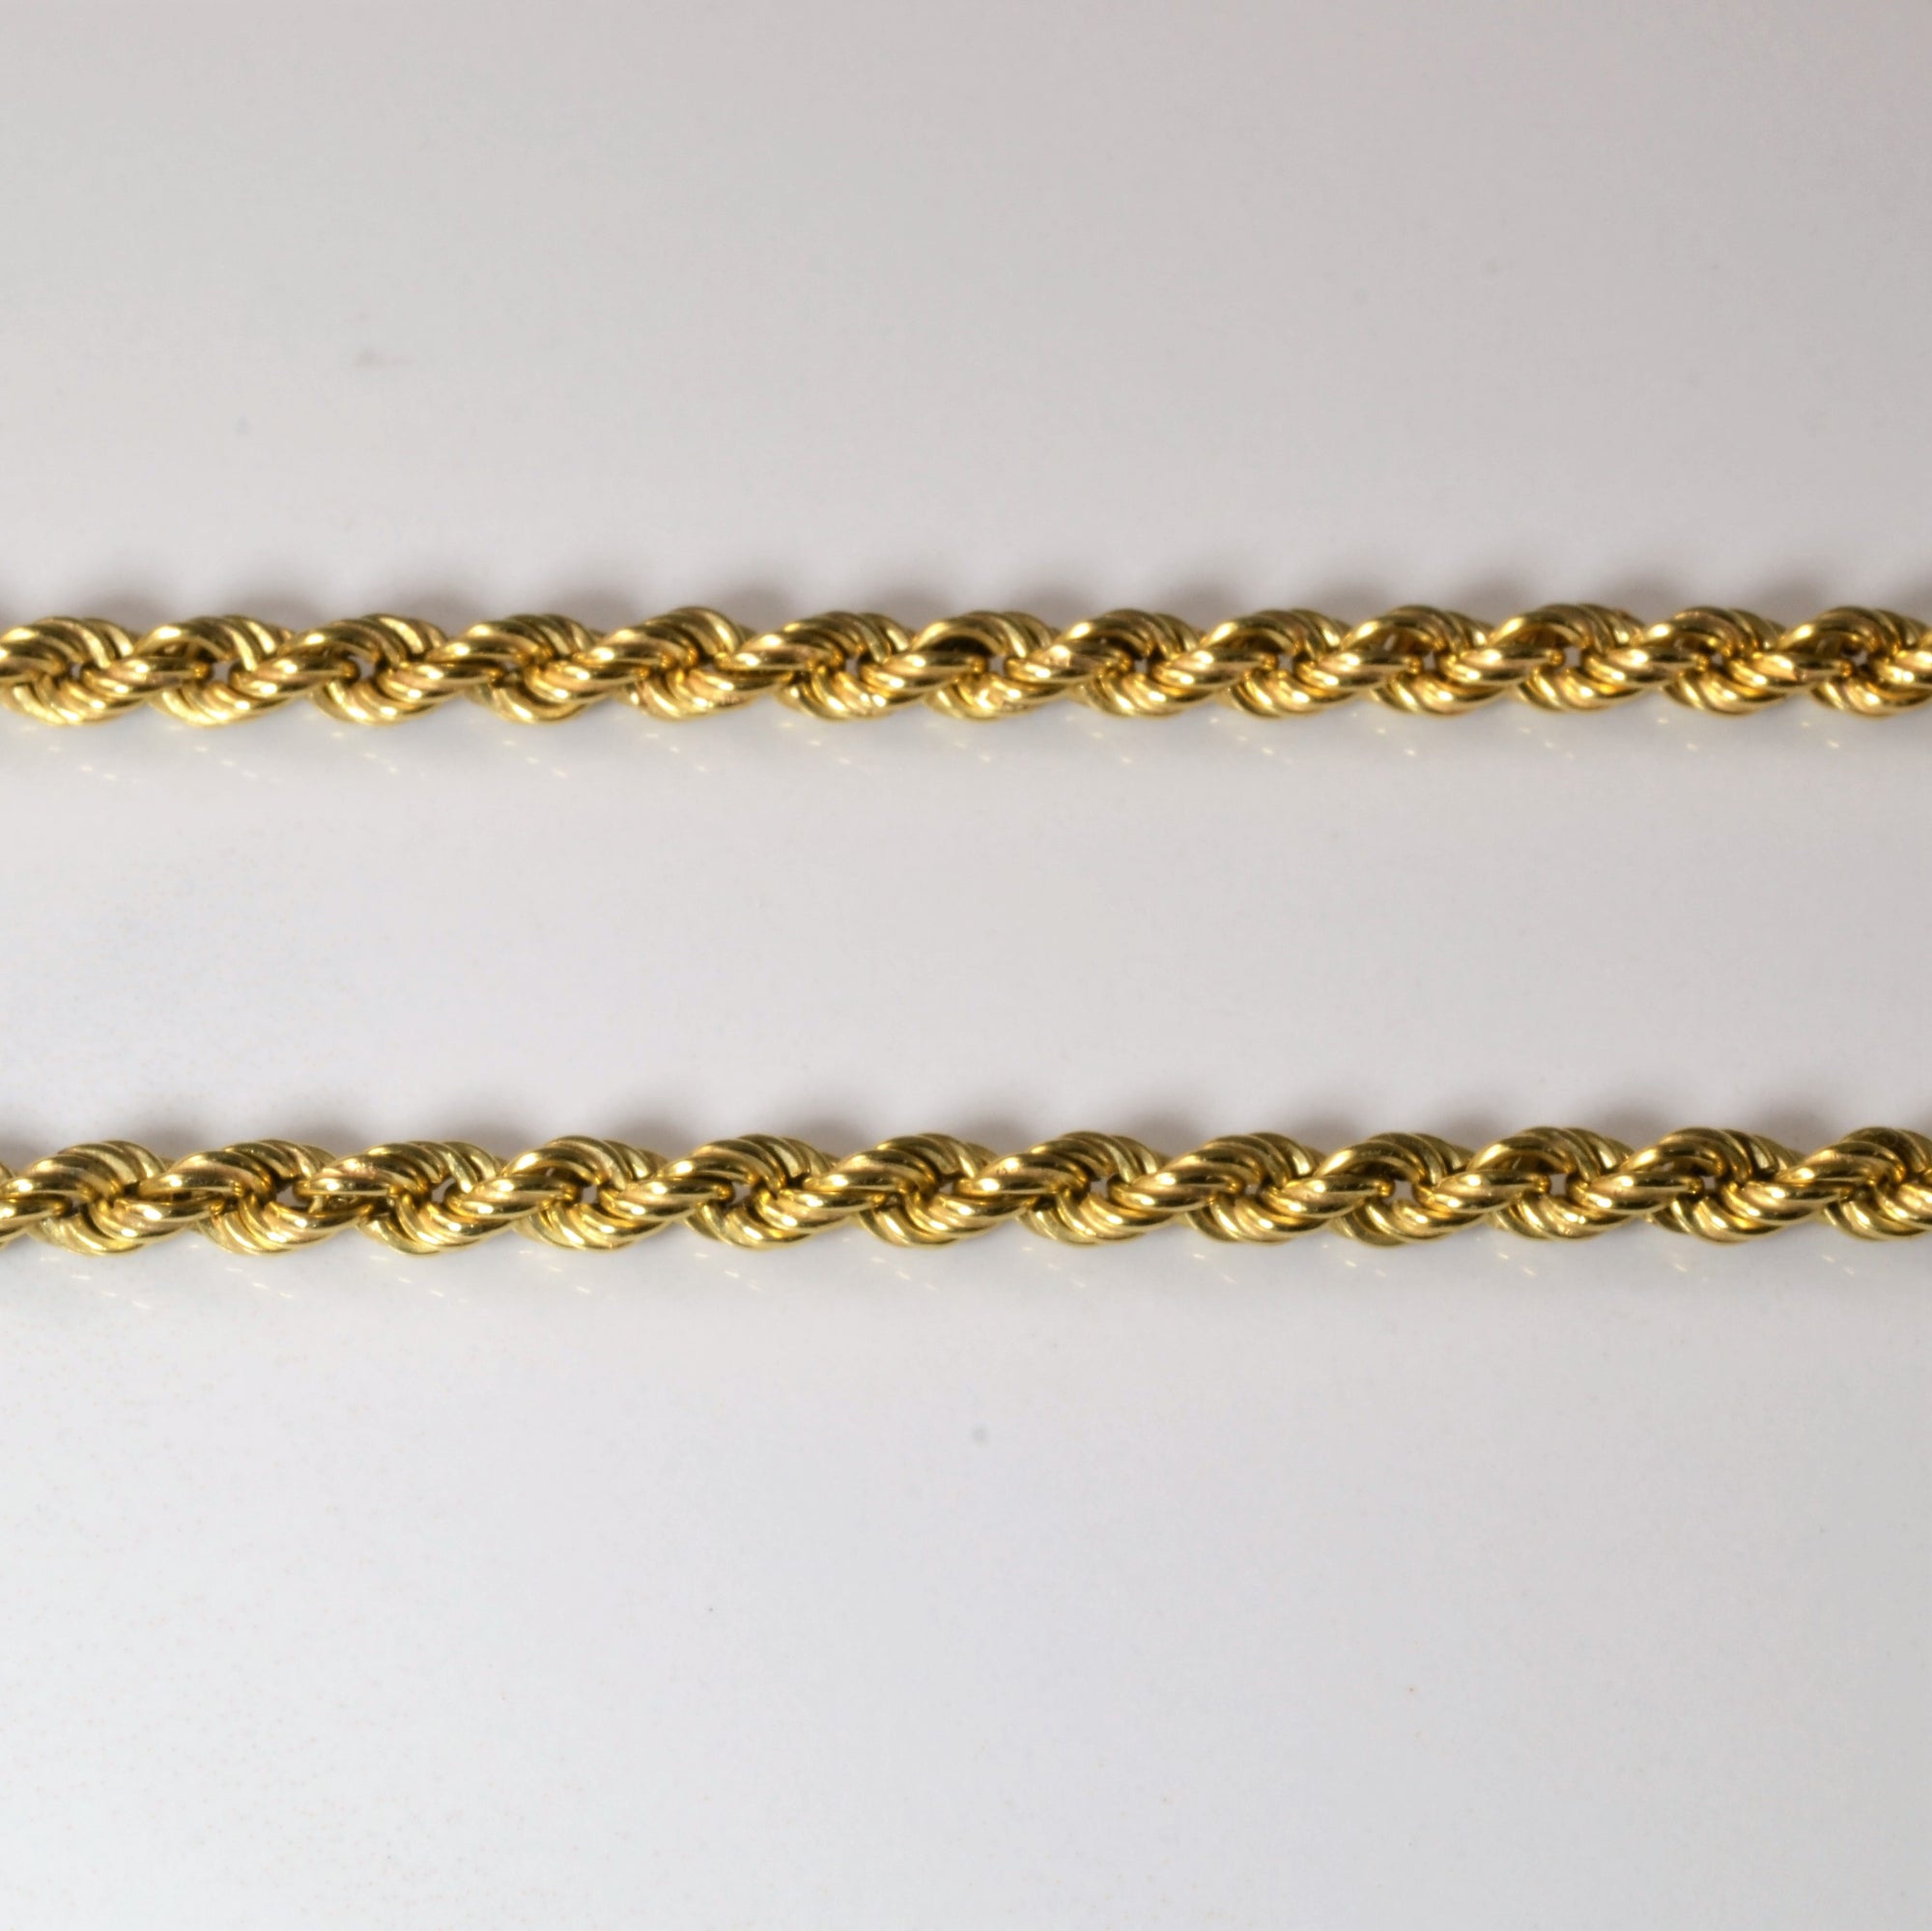 18k Yellow Gold Rope Chain | 16